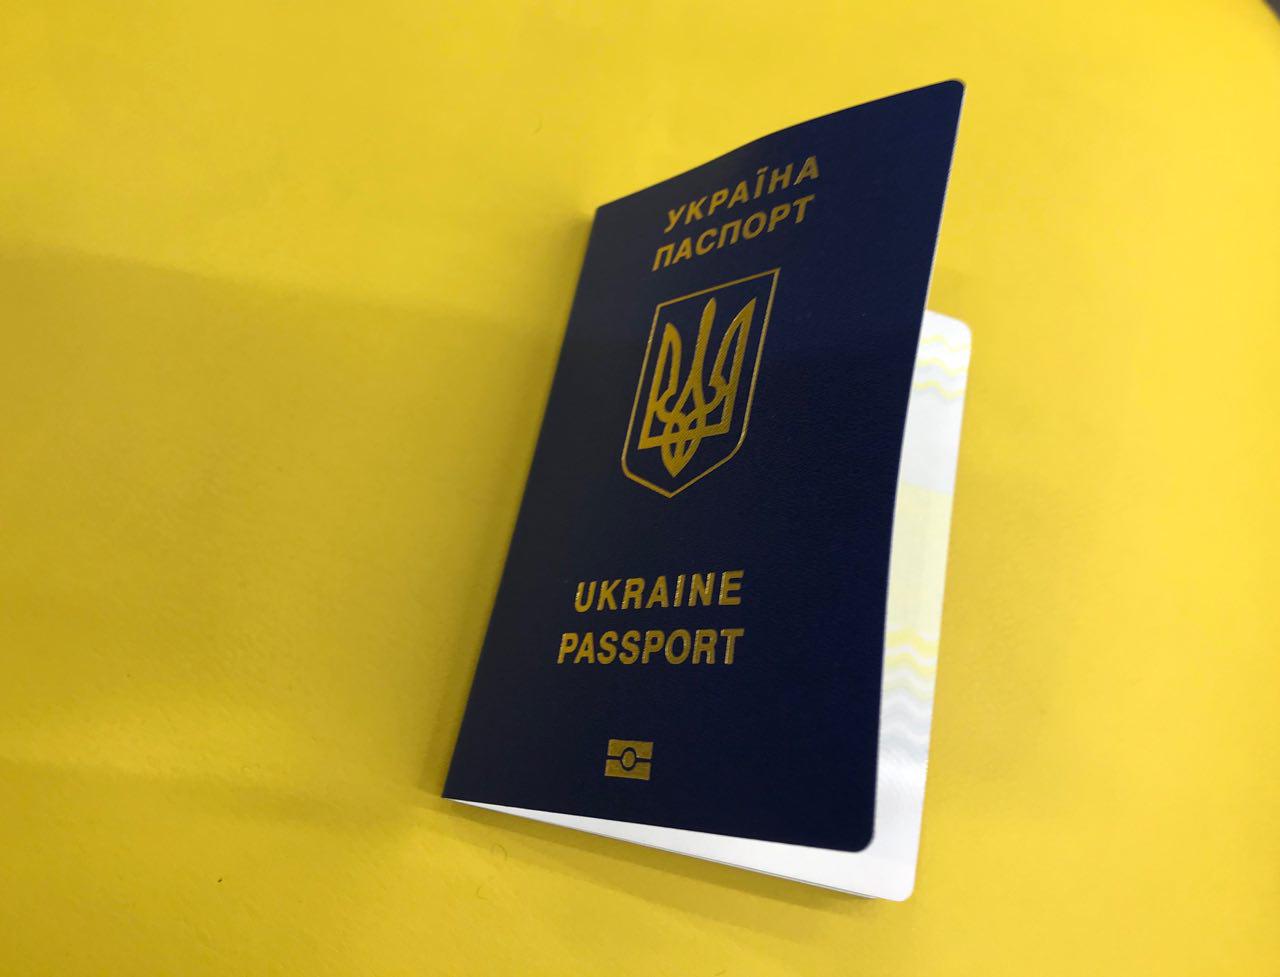 Спрос на загранпаспорта в Харькове увеличился: цены 2019. Фото: Алина Бычек/Vgorode